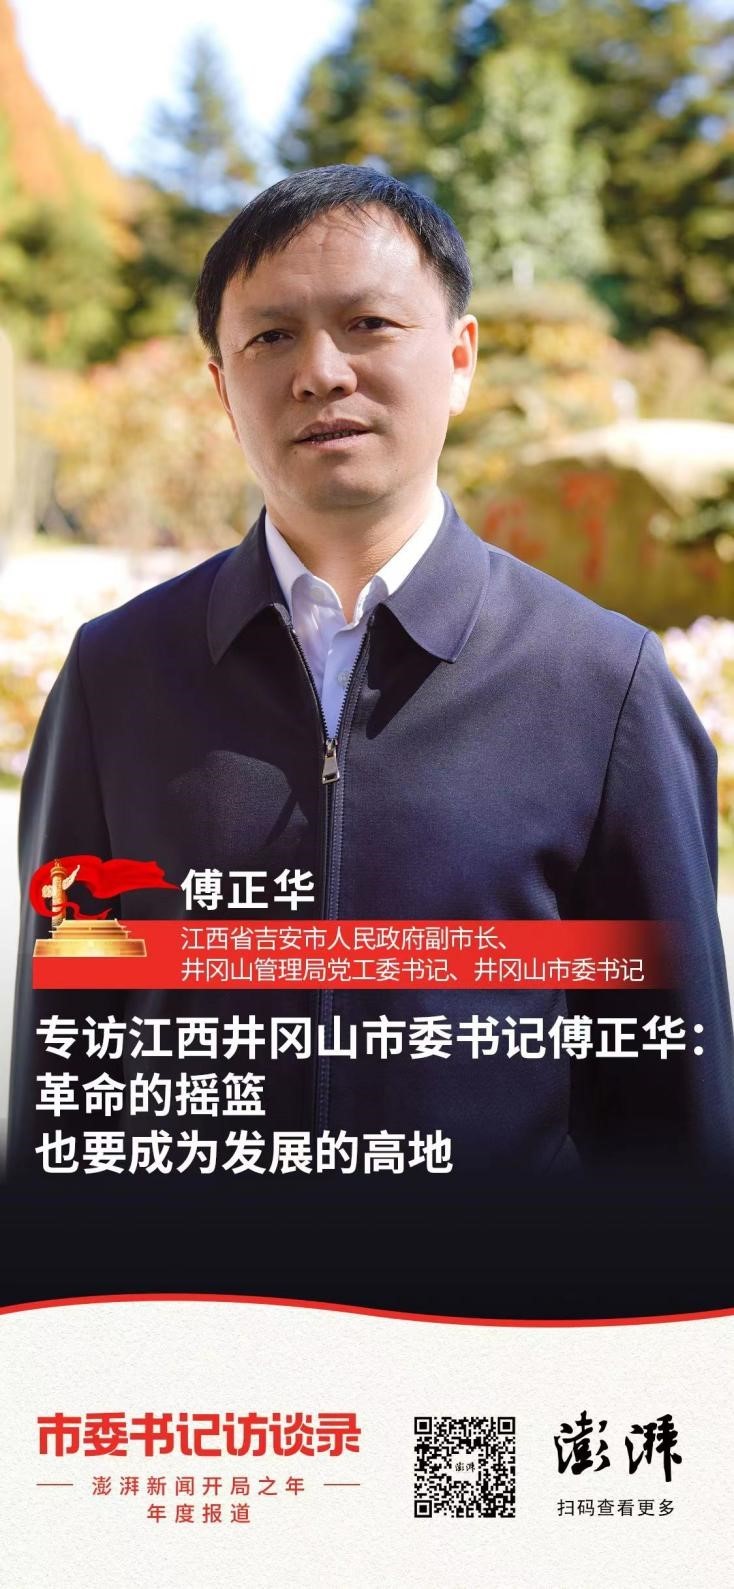 井冈山市委书记傅正华 :革命的摇篮也要成为发展的高地